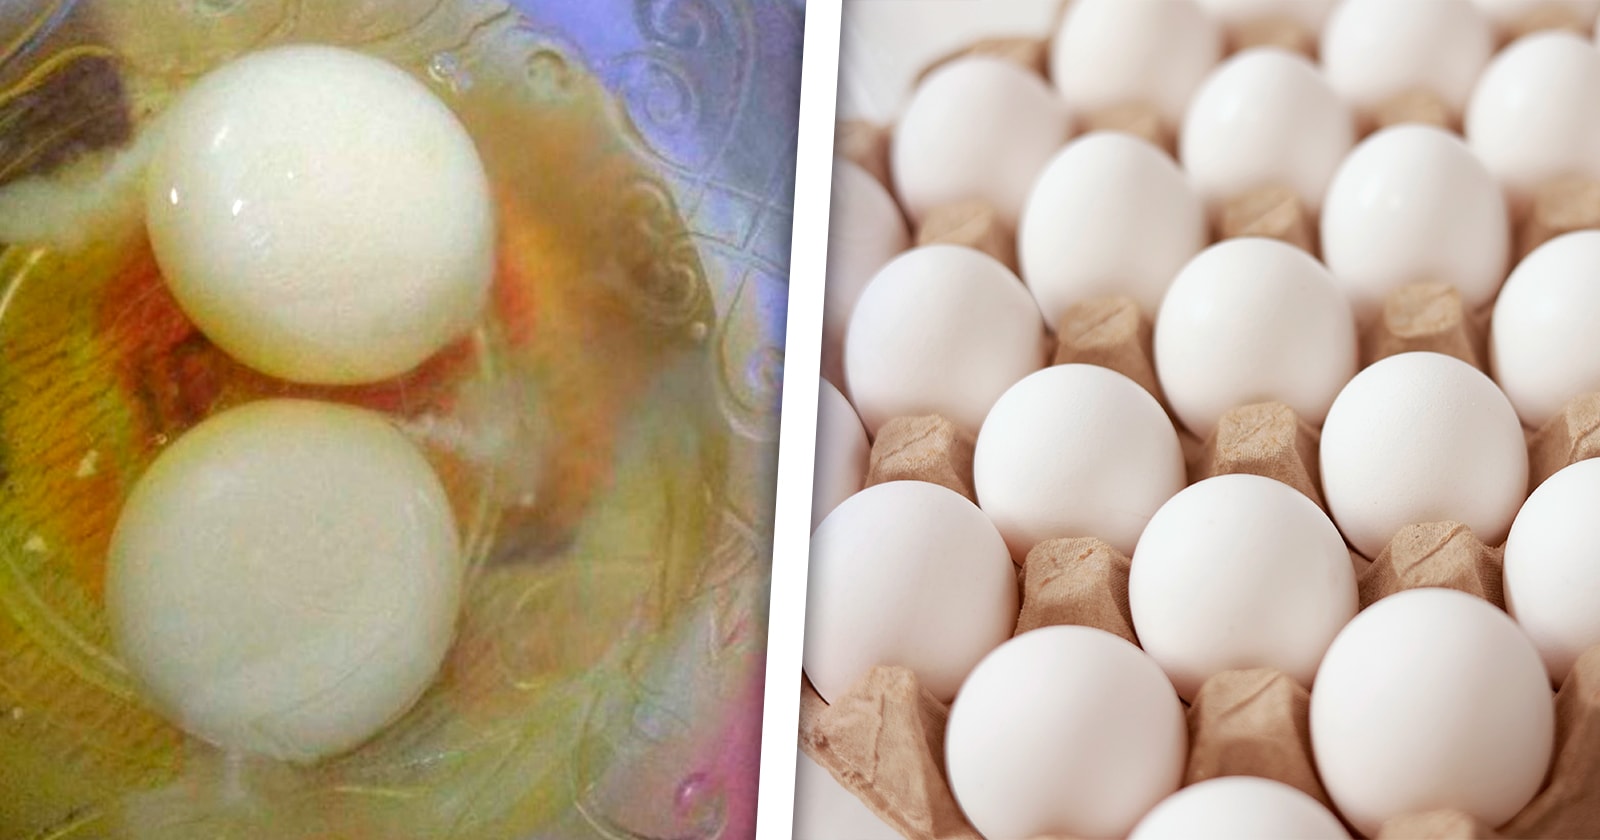 Huevos con Yema Blanca sin Olor ni Sabor por la Canasta Básica en Cuba ¿A qué Podría Deberse?